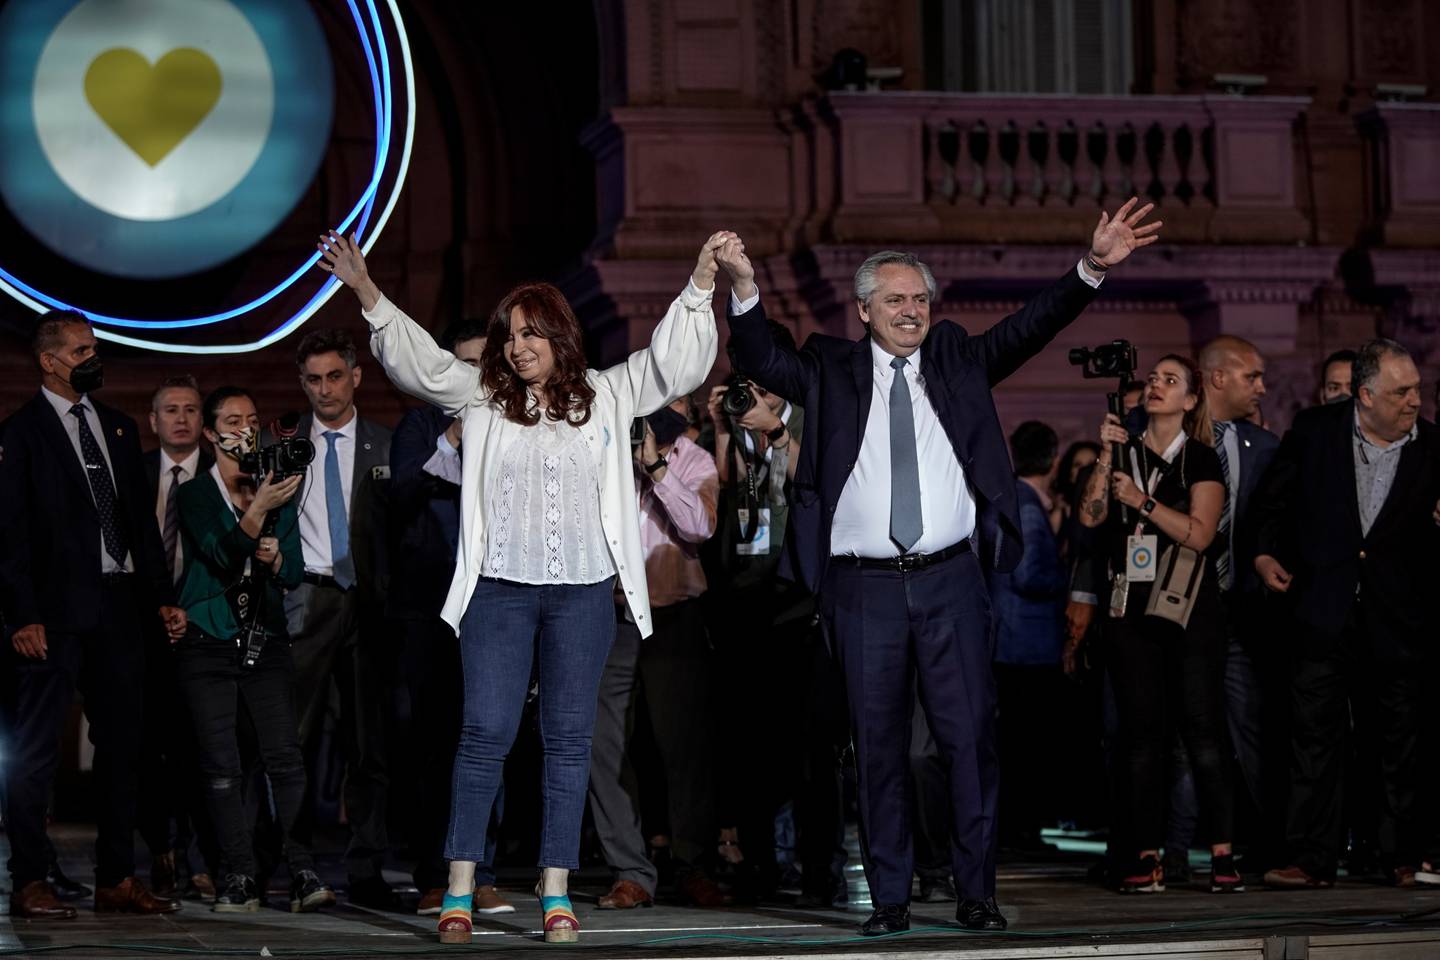 Cristina Fernández de Kirchner, vicepresidenta de Argentina, y Alberto Fernández, presidente de Argentina, saludan a la multitud en un evento en Buenos Aires, Argentina, el viernes 10 de diciembre de 2021.Fotógrafo: Sarah Pabst/Bloomberg